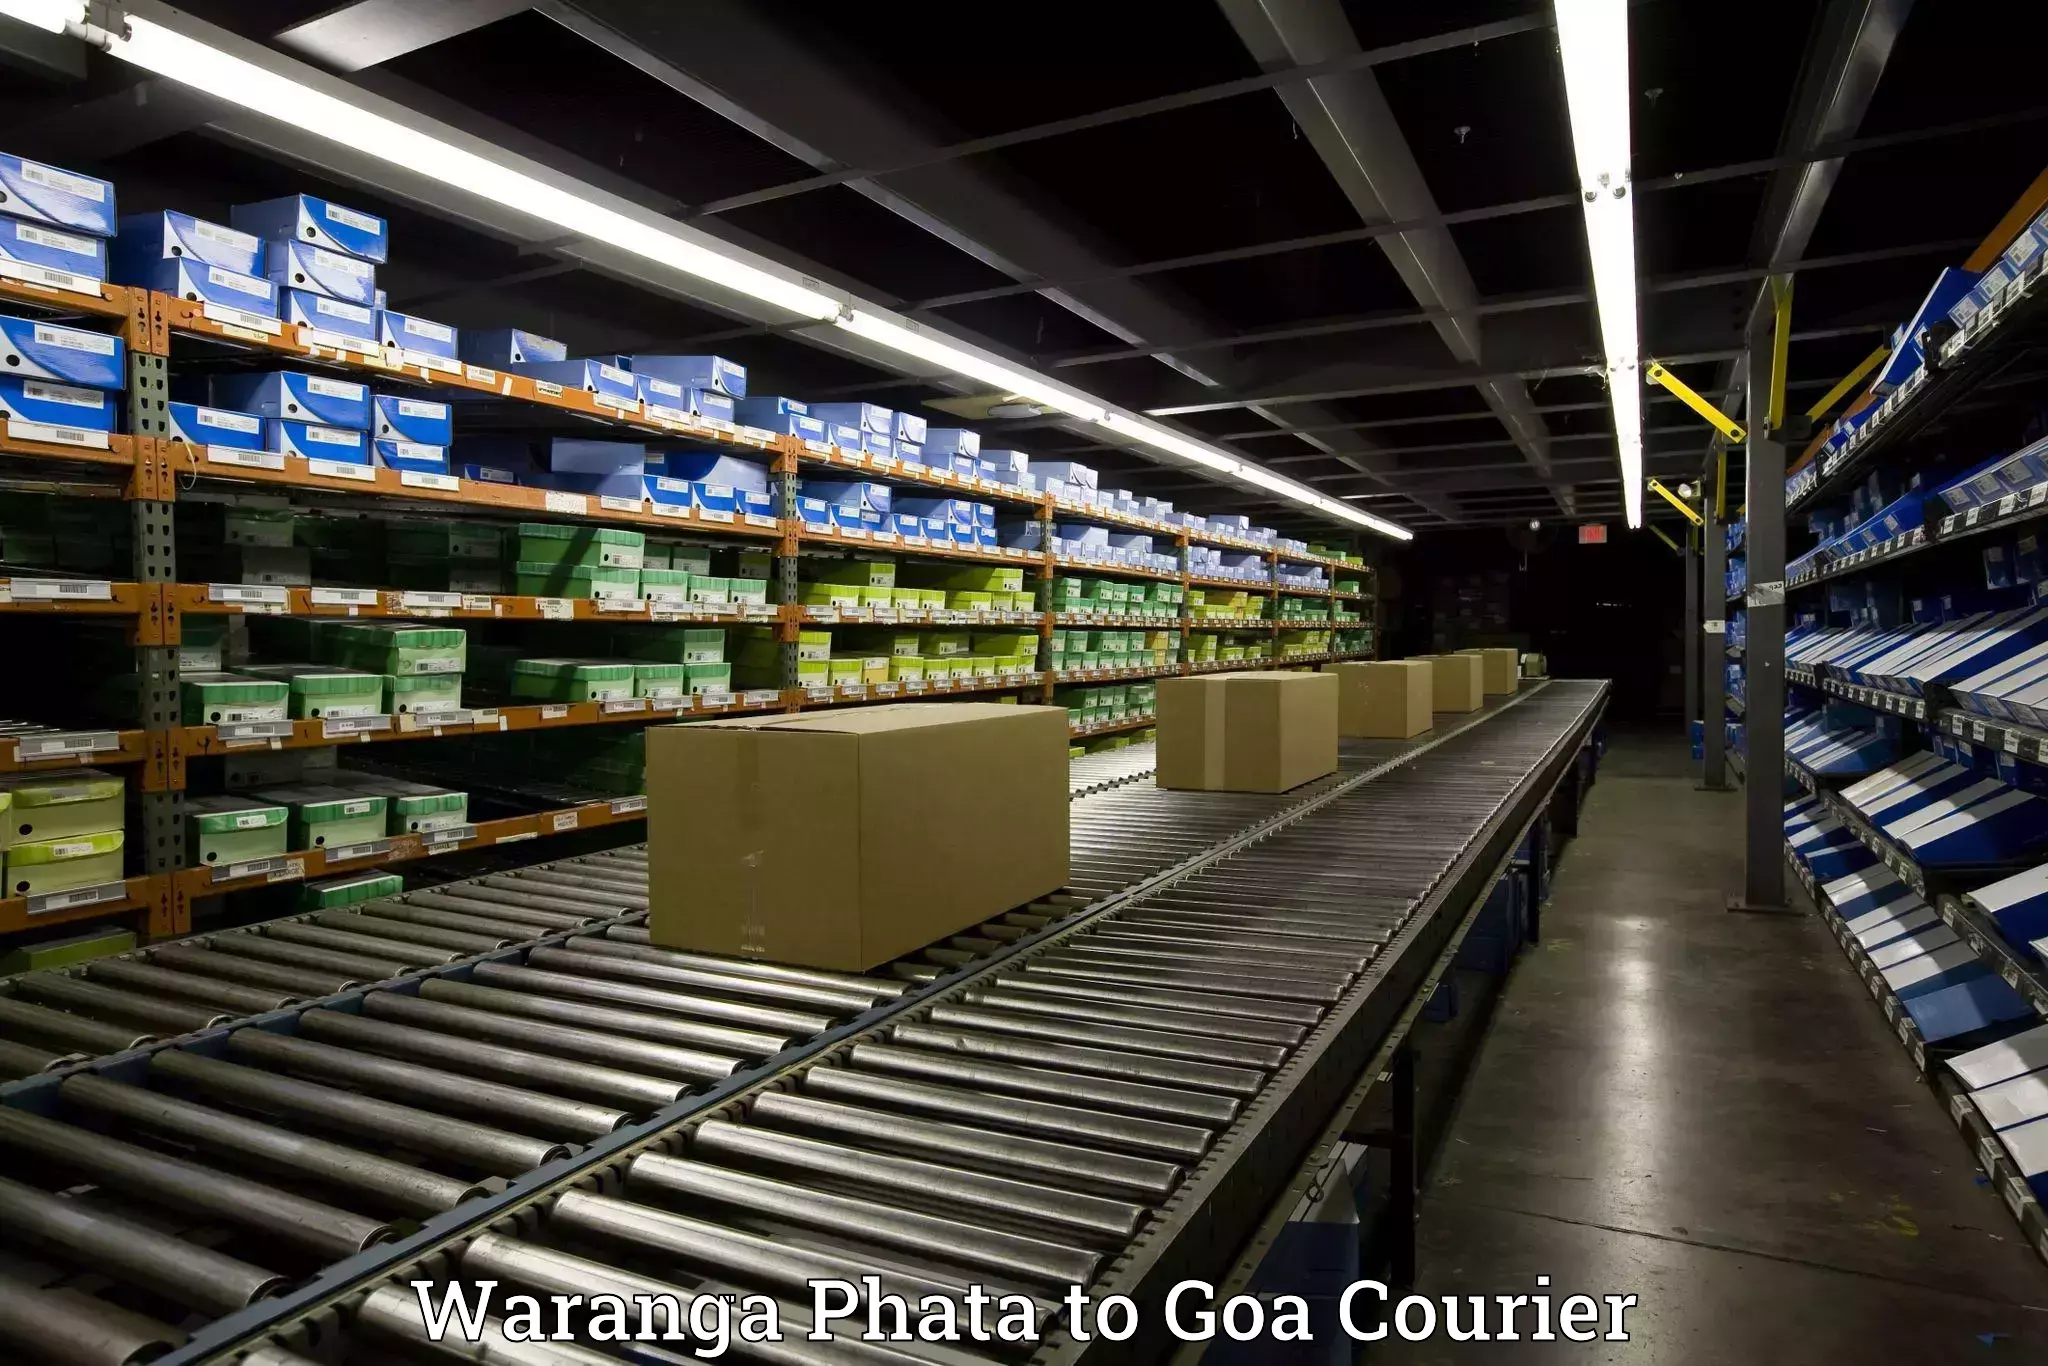 Household goods movers and packers Waranga Phata to Vasco da Gama